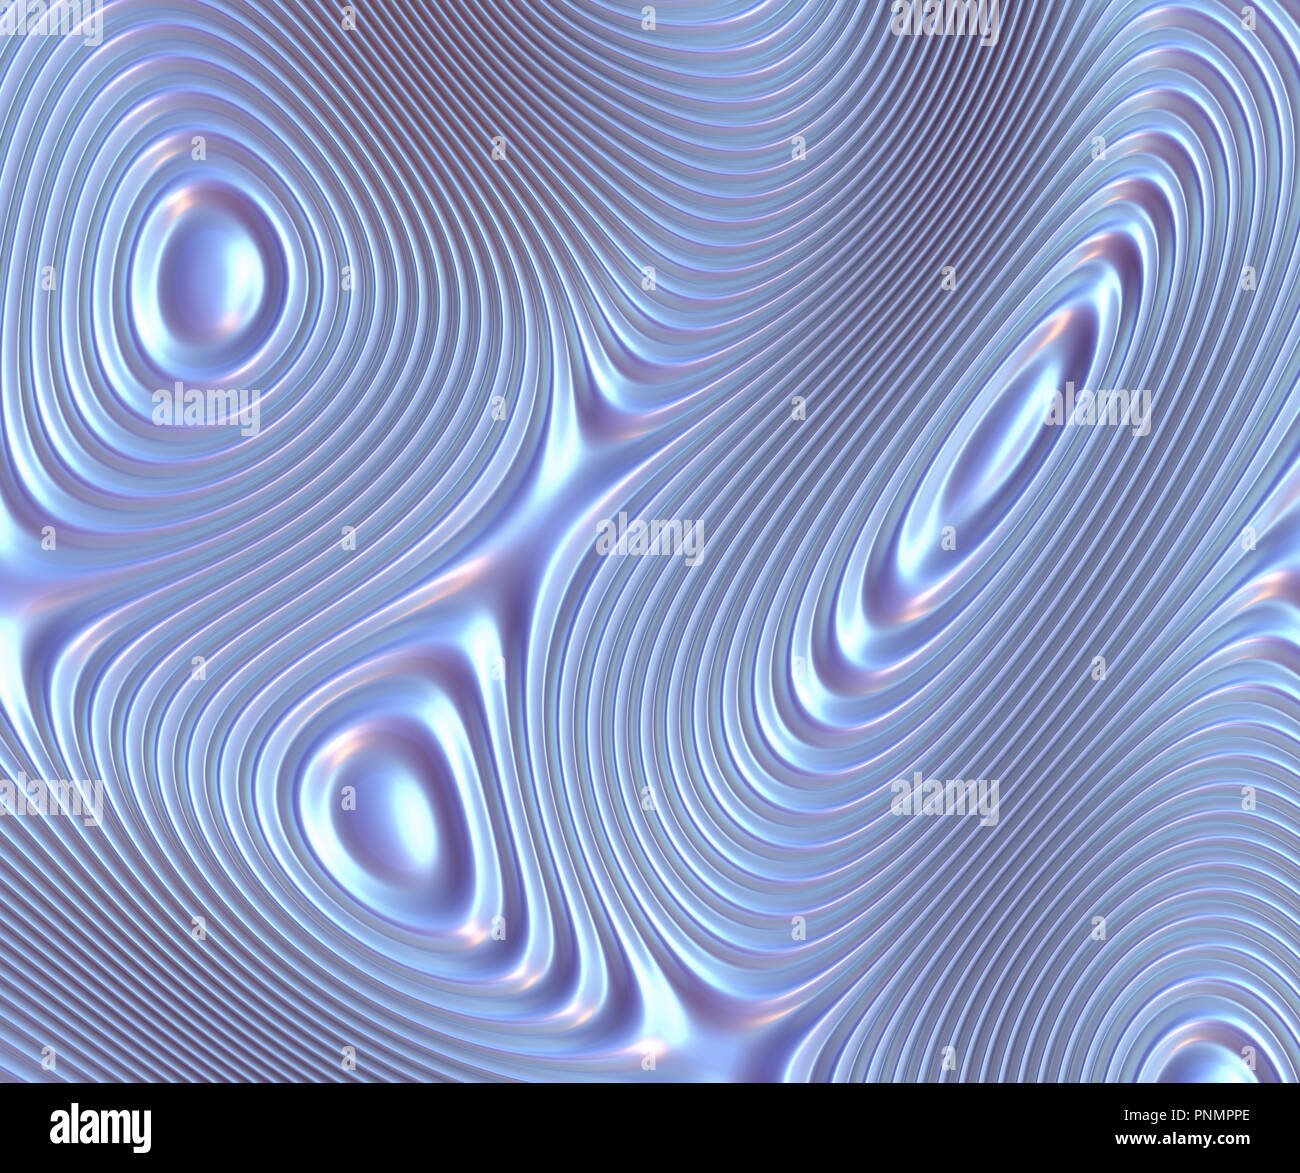 Zusammenfassung Hintergrund mit farbigen Kreisen in Form von Schallwellen. Stockfoto